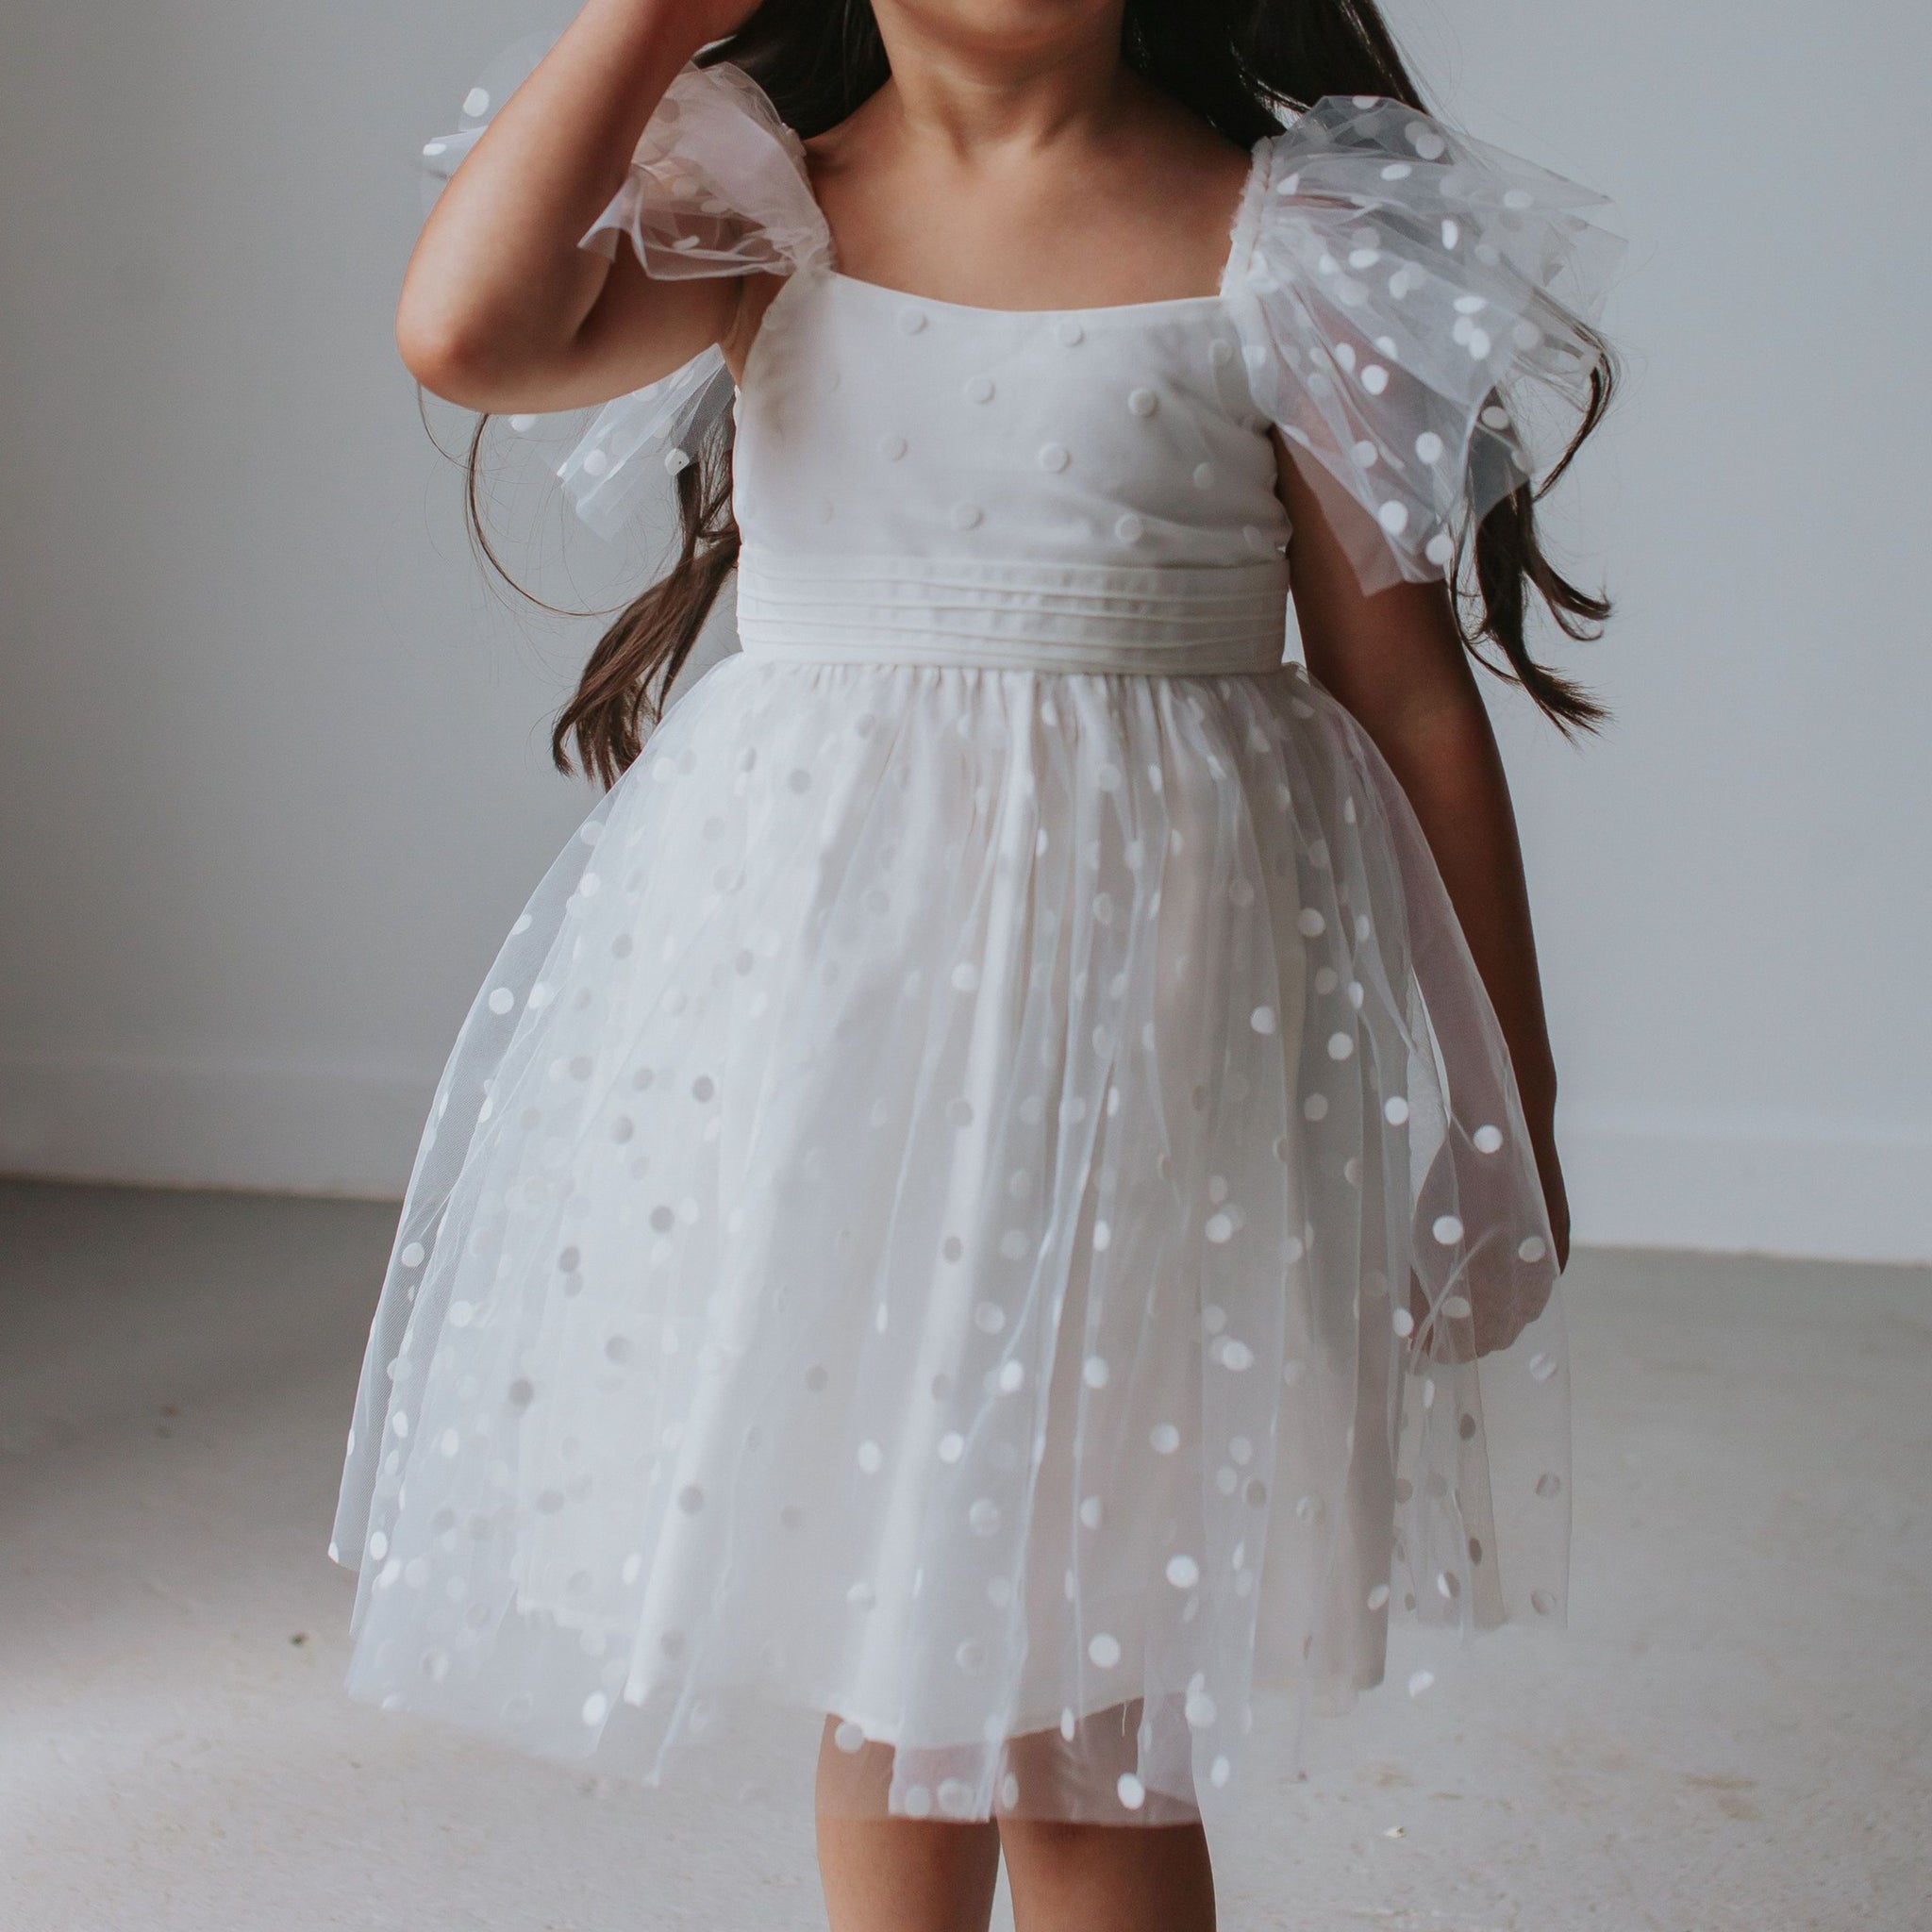 cuteheads Little Girl's White Tulle Polka Dot Dress 12-18 Months / White